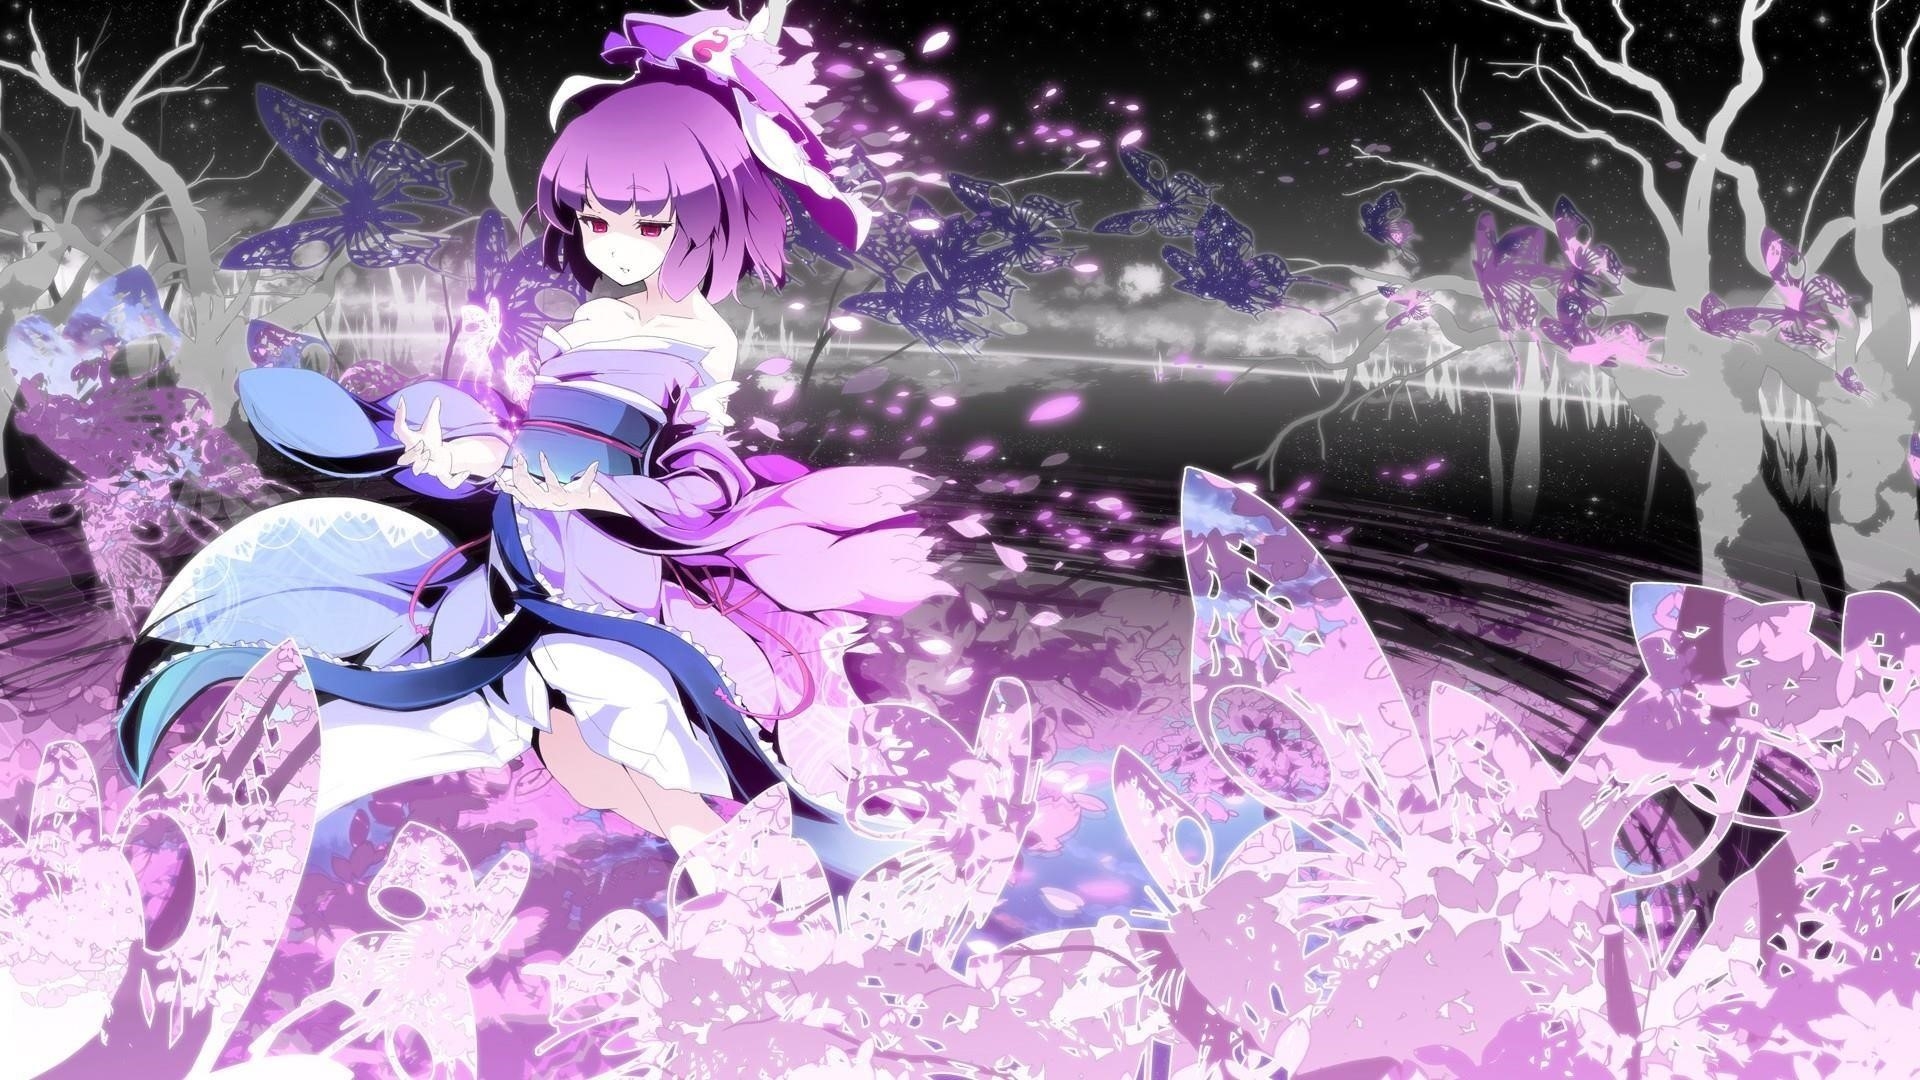 Hình ảnh của một bức tranh anime đáng yêu màu tím.